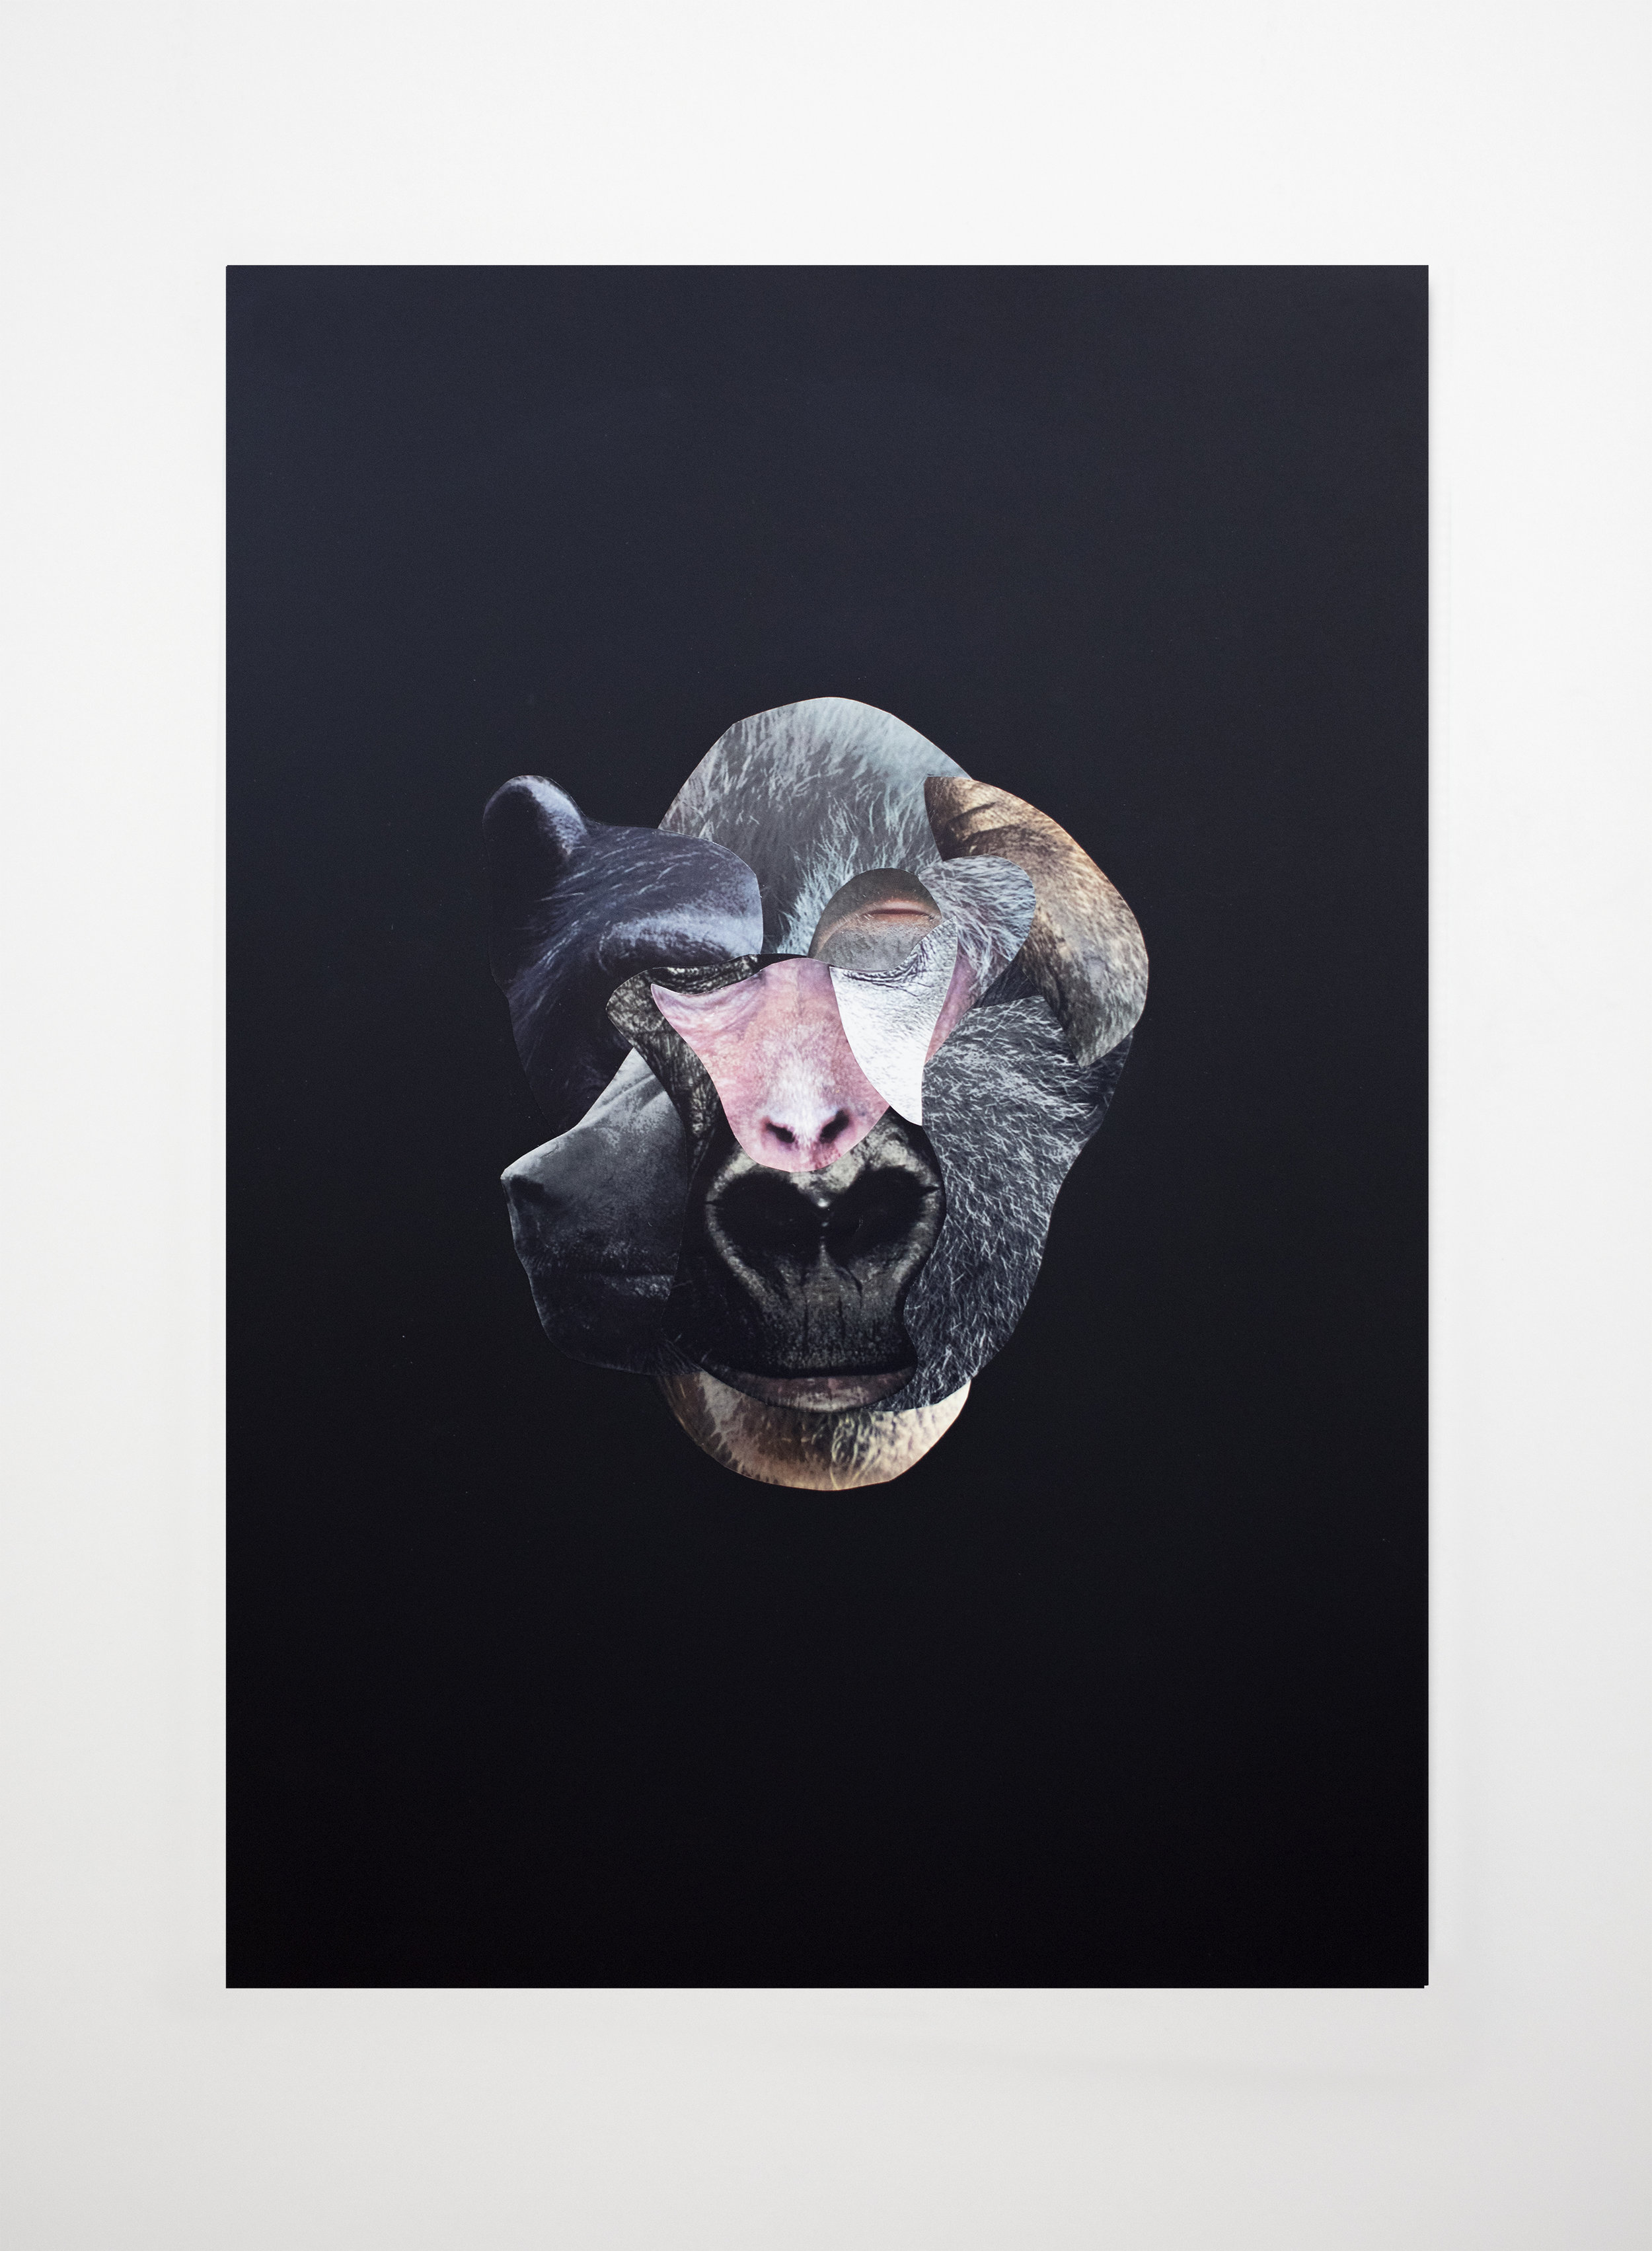  Les restes No 08.  Collage sur papier noir / Collage on black paper  13 3/4 X 19 3/4 in / 33 X 50 cm   